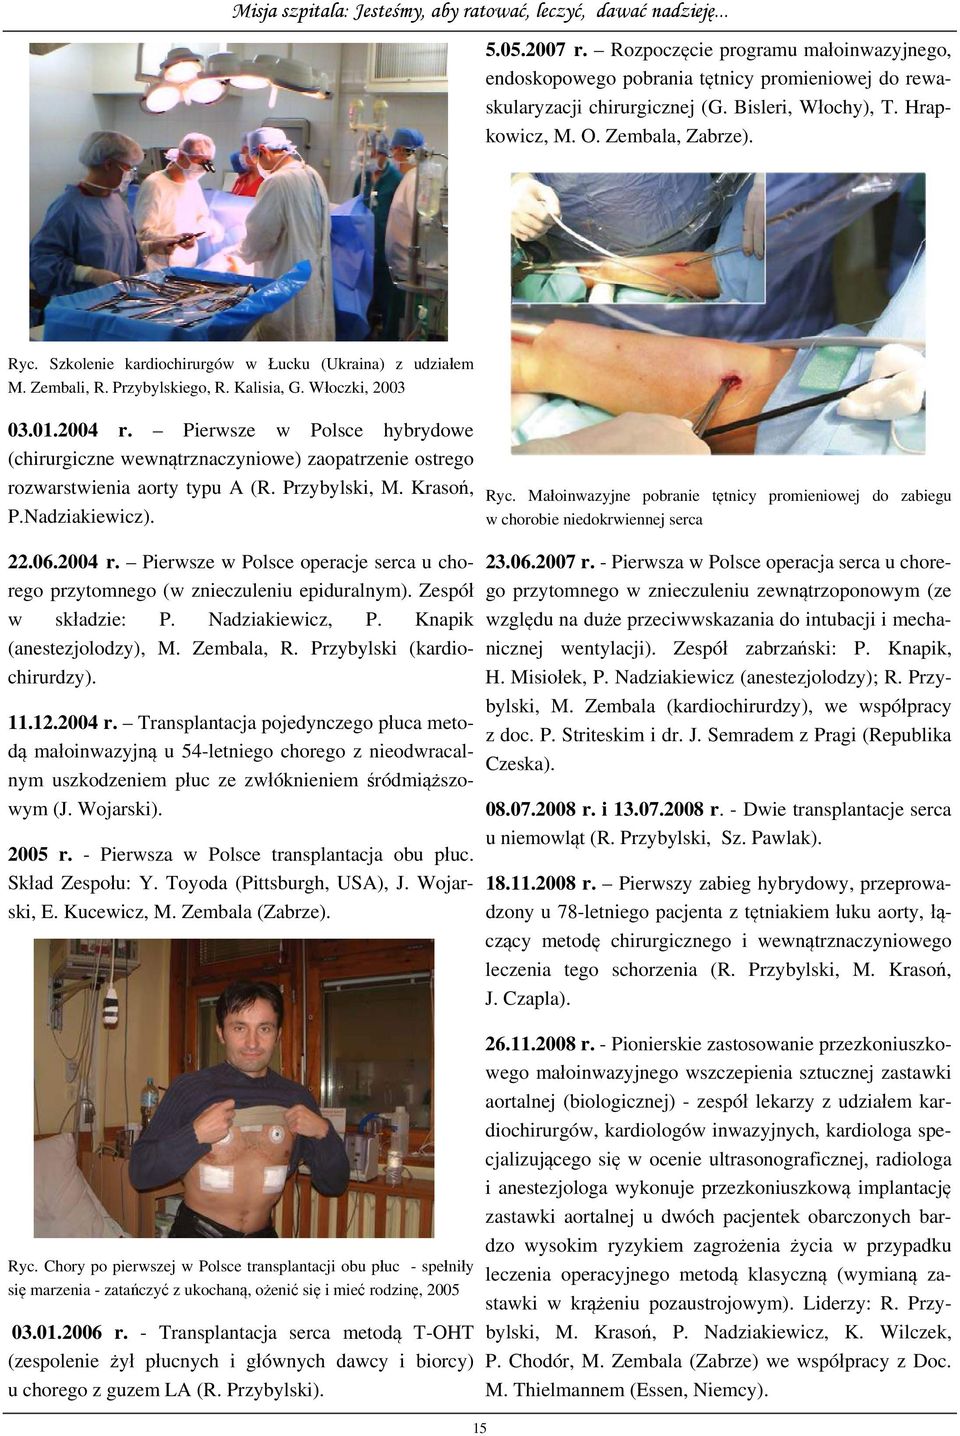 Pierwsze w Polsce hybrydowe (chirurgiczne wewnątrznaczyniowe) zaopatrzenie ostrego rozwarstwienia aorty typu A (R. Przybylski, M. Krasoń, P.Nadziakiewicz). 22.06.2004 r.